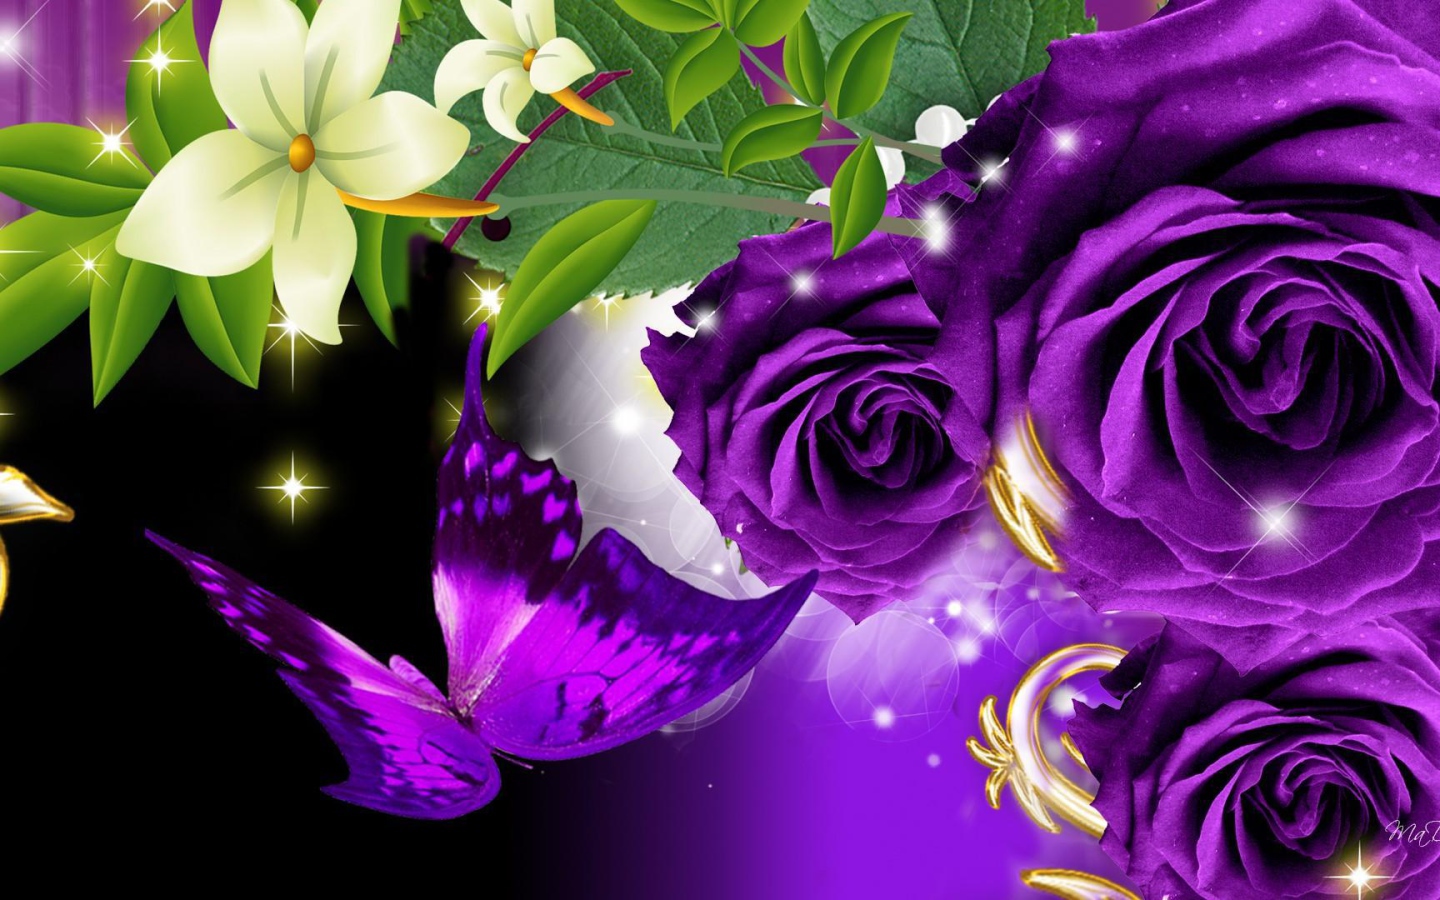 46+ Purple Butterfly Desktop Wallpaper on WallpaperSafari